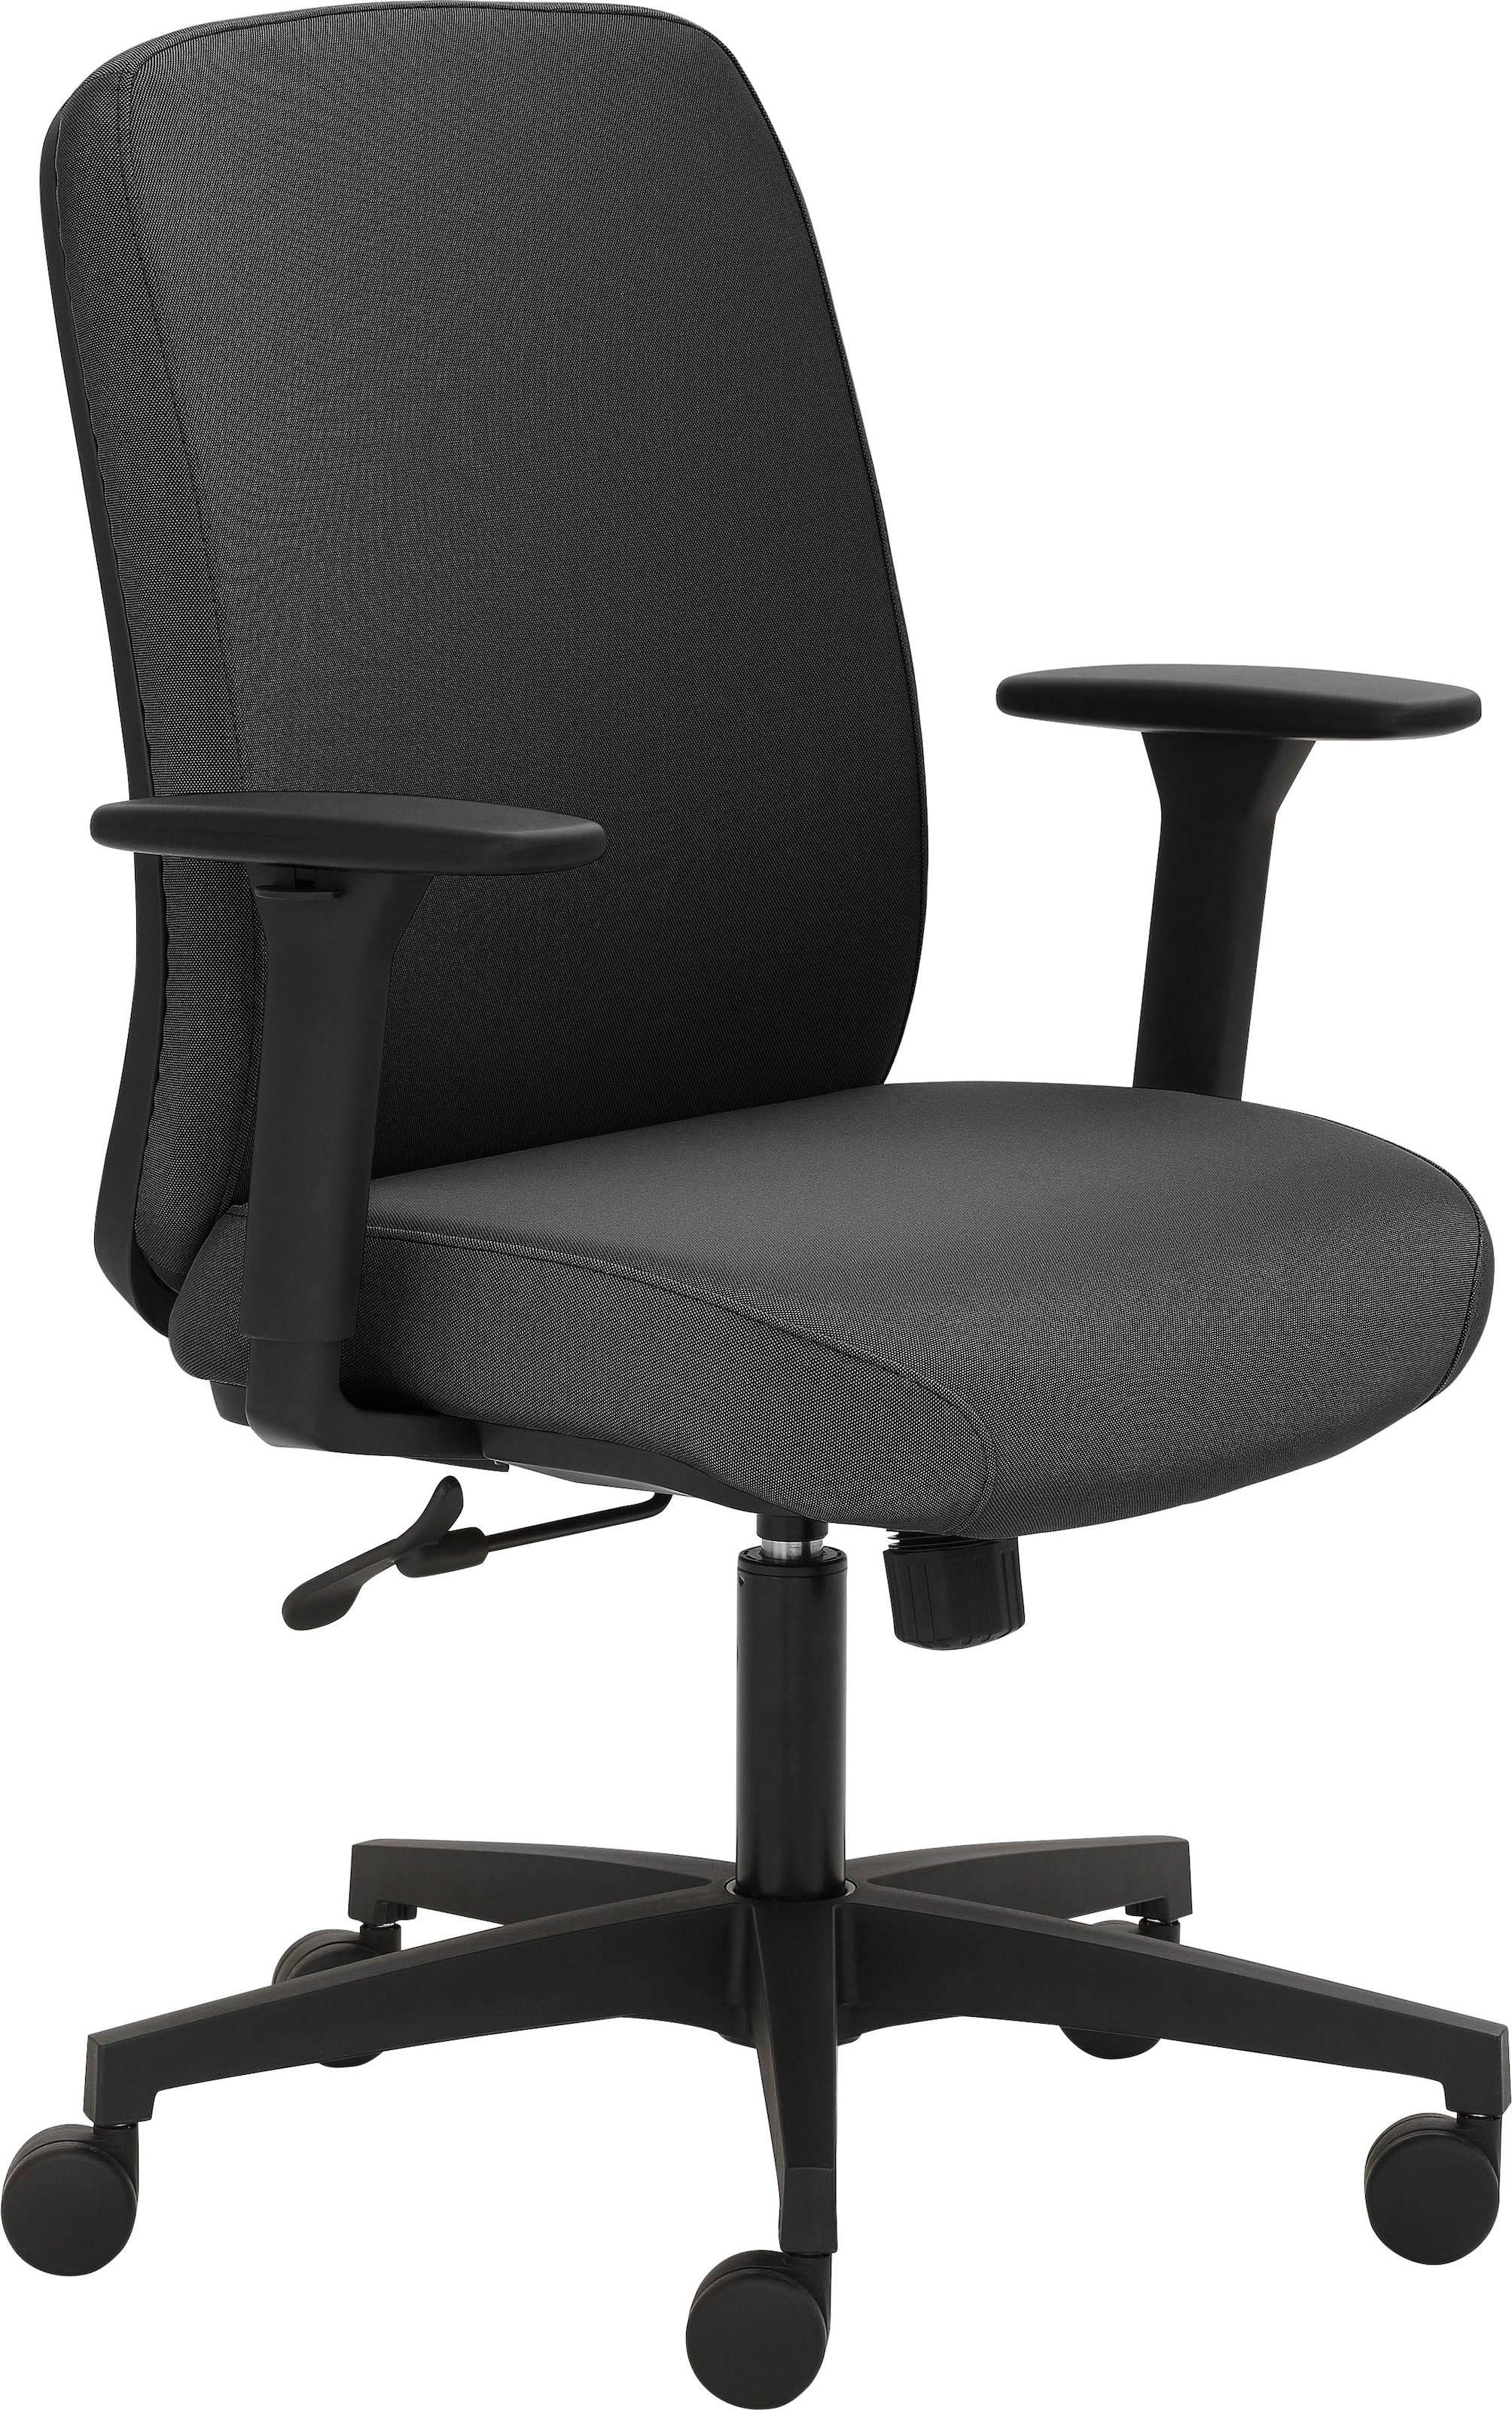 Mayer Sitzmöbel Drehstuhl »2219«, Struktur (recyceltes Polyester), GS-zertifiziert, extra starke Polsterung für maximalen Sitzkomfort